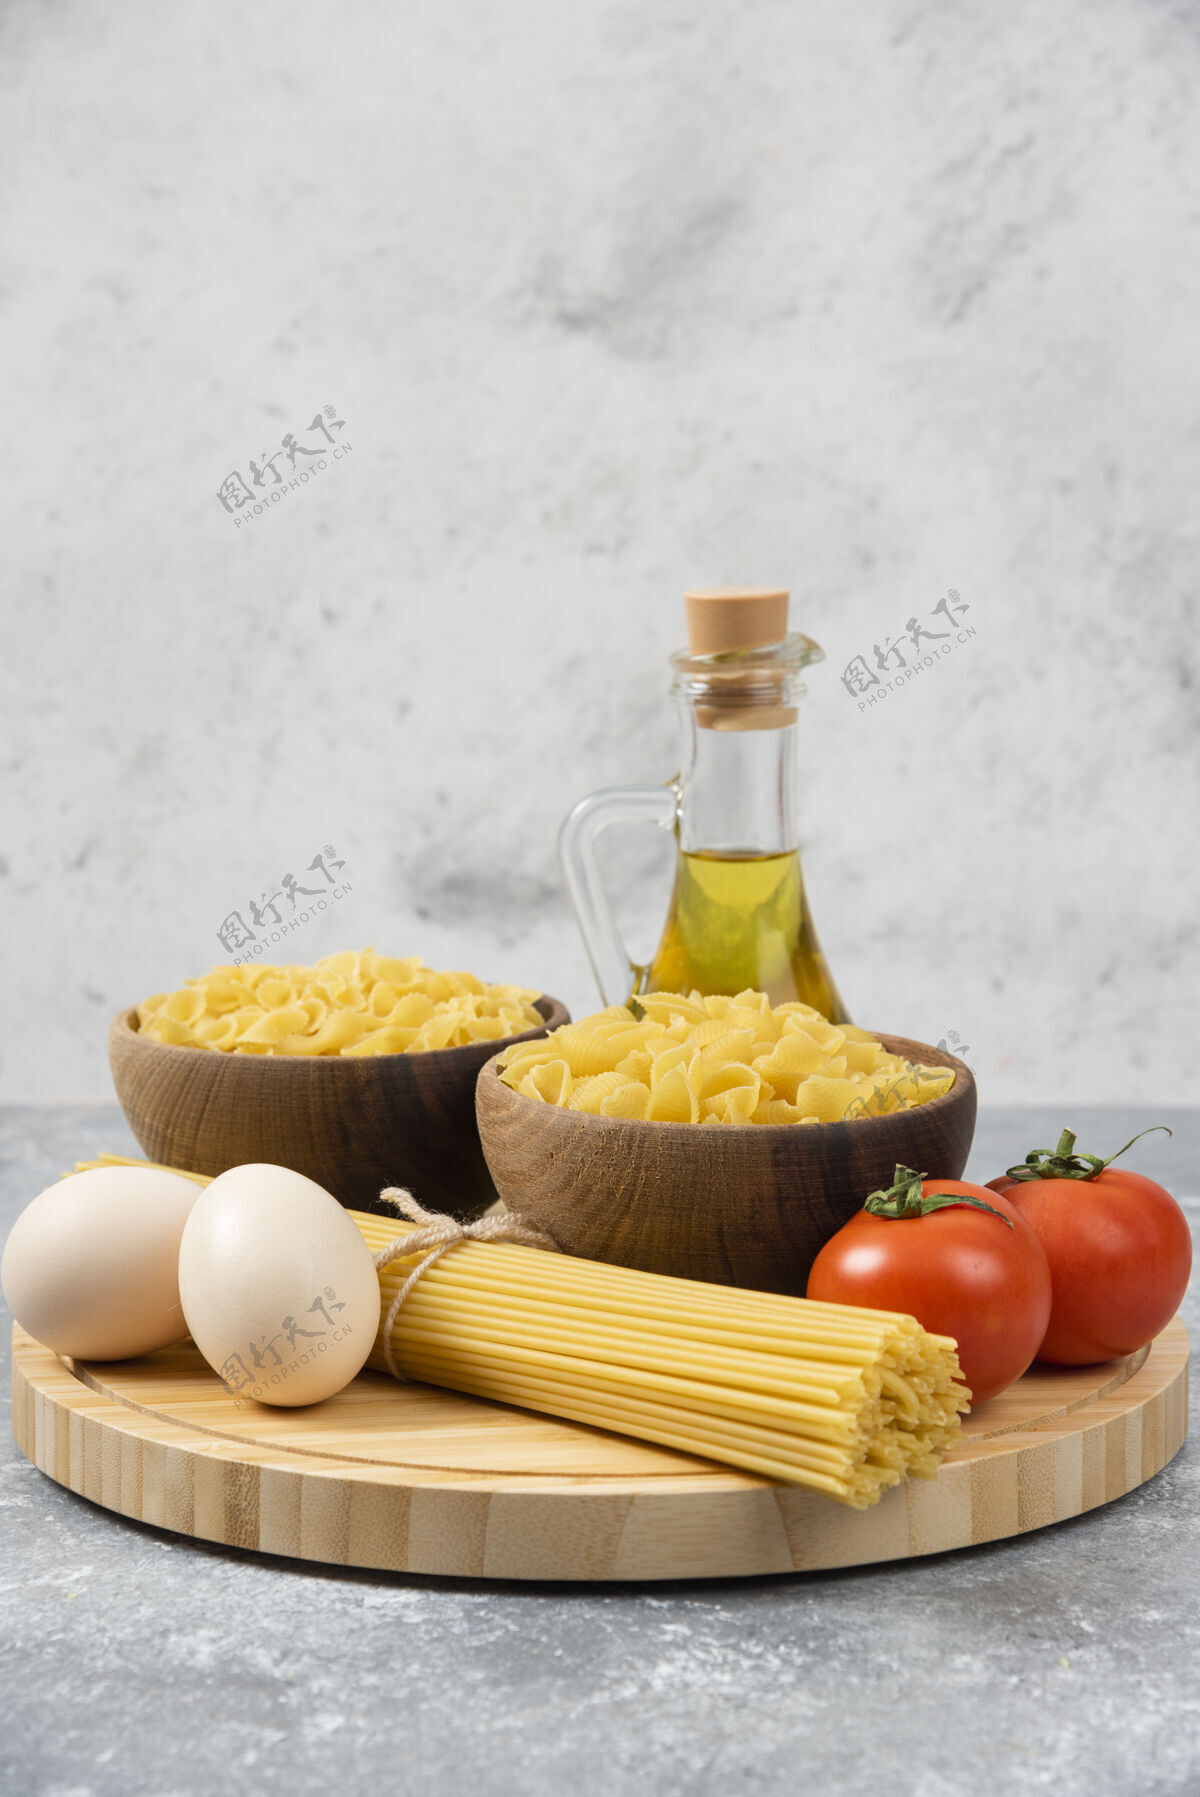 面食在大理石表面放上几碗生意大利面 鸡蛋 西红柿和橄榄油生的意大利面鸡蛋